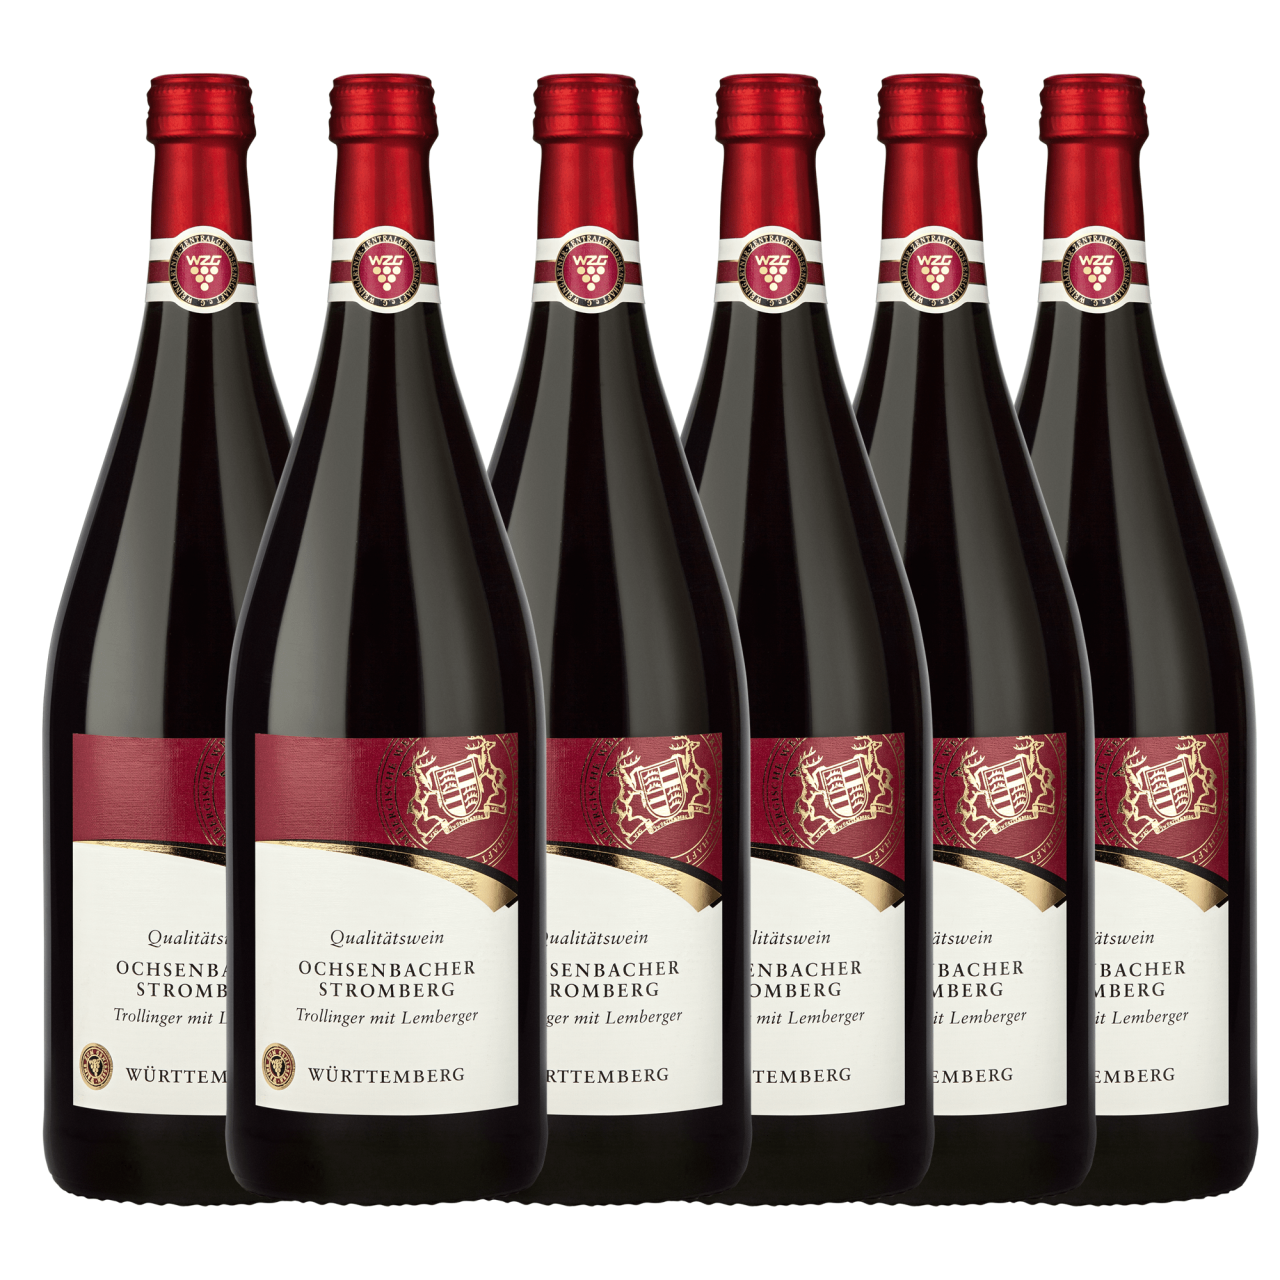 Ochsenbacher Stromberg Trollinger mit Lemberger Qualitätswein 1,0L 6er Karton Württembergische WZG Norma24 DE